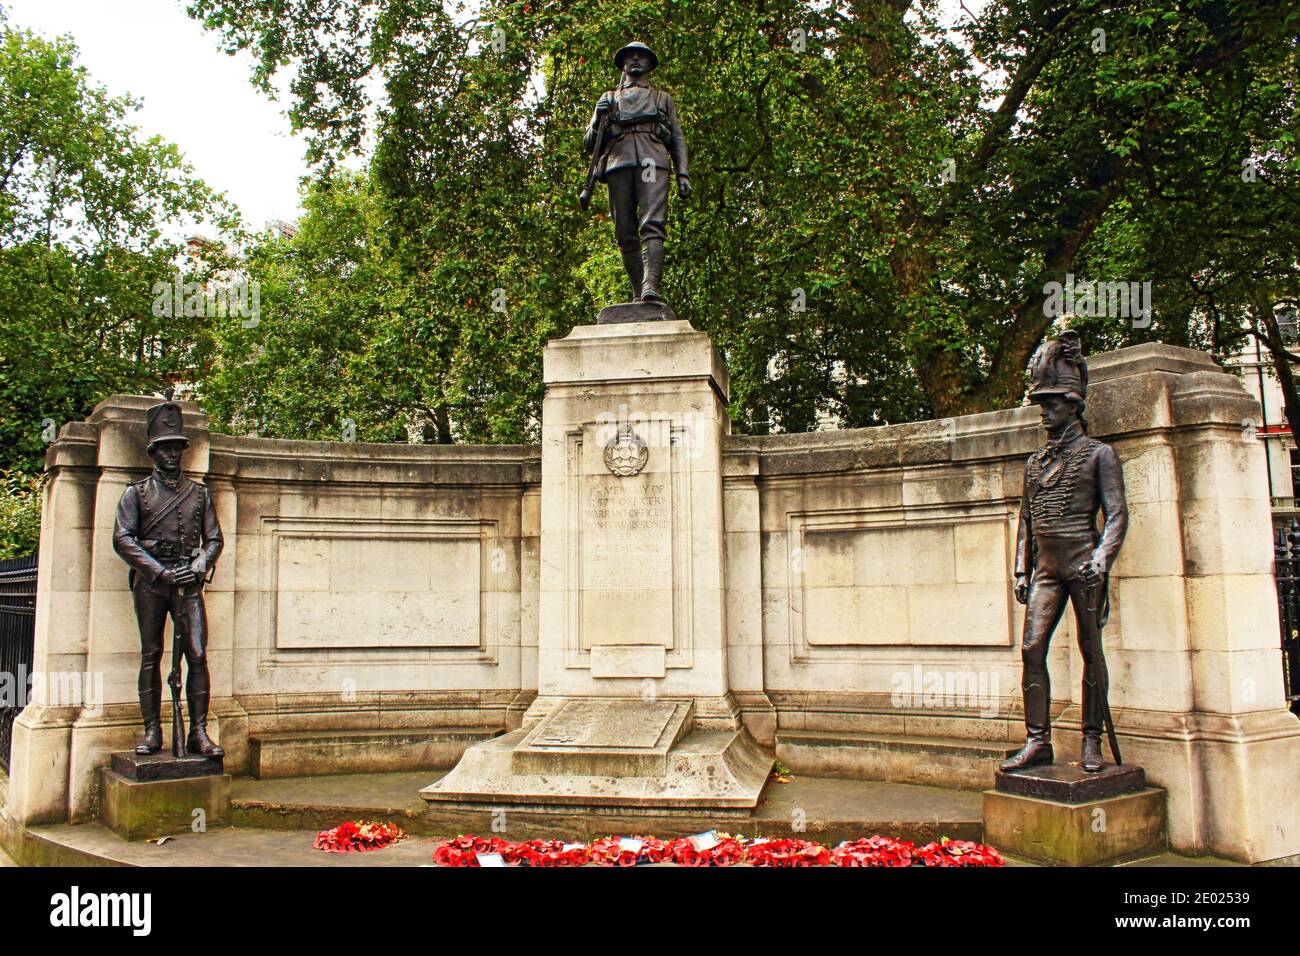 Le monument commémoratif de guerre de la Brigade des fusils à fusil, à Londres, commémore le service De la Brigade des fusils à Canon rayé dans le premier et le deuxième monde Guerres.août 2016 Banque D'Images